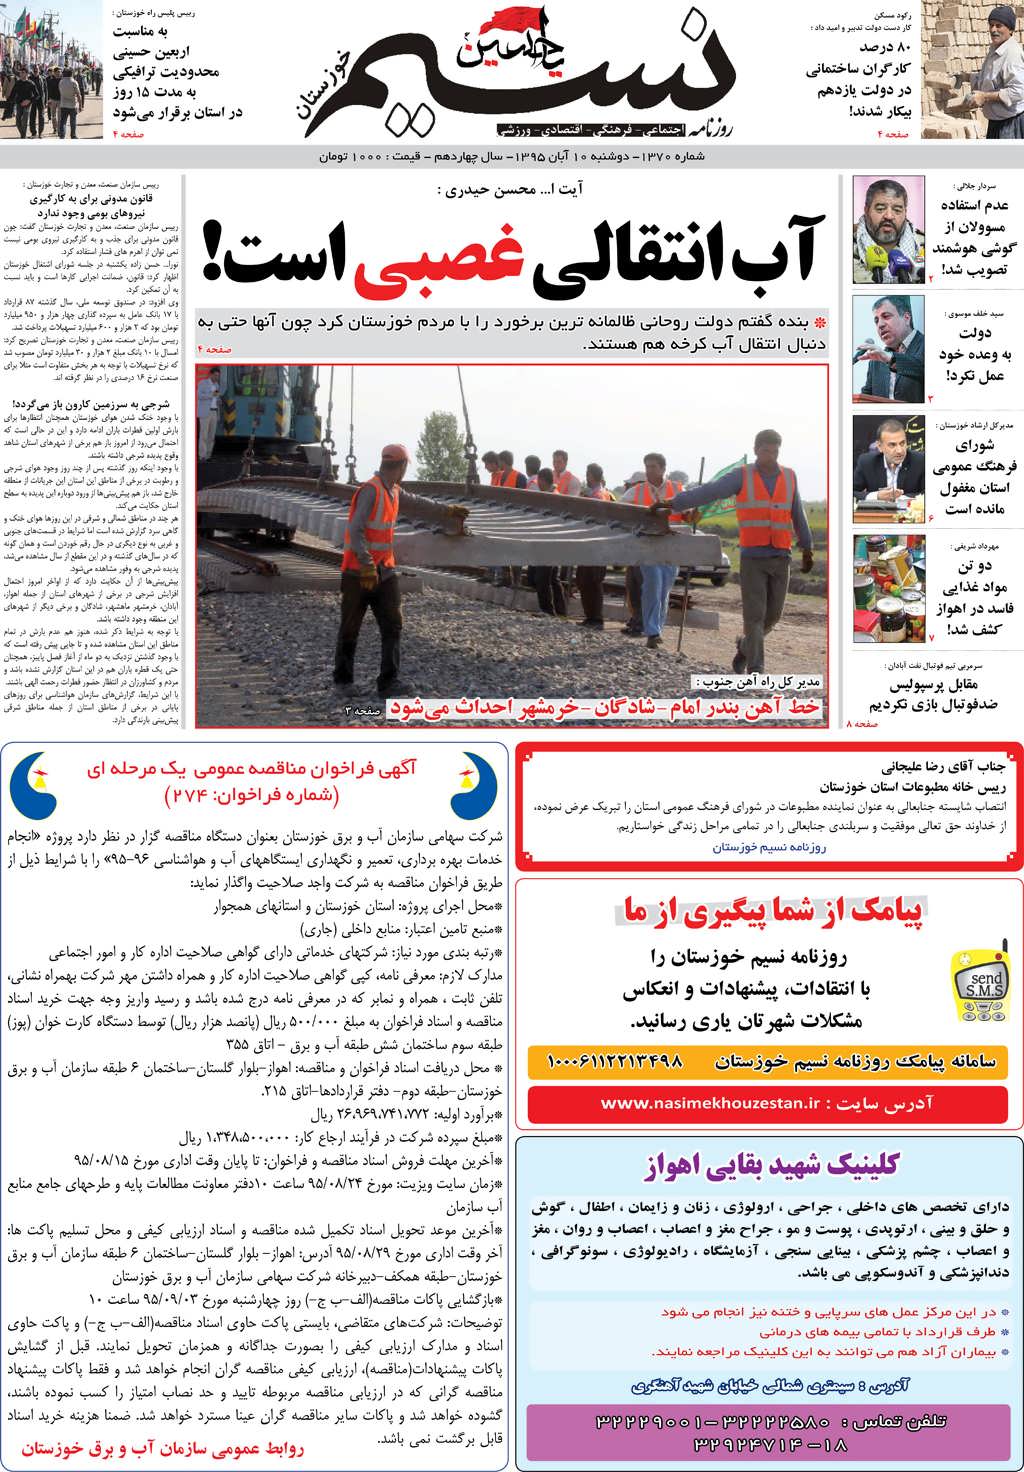 صفحه اصلی روزنامه نسیم شماره 1370